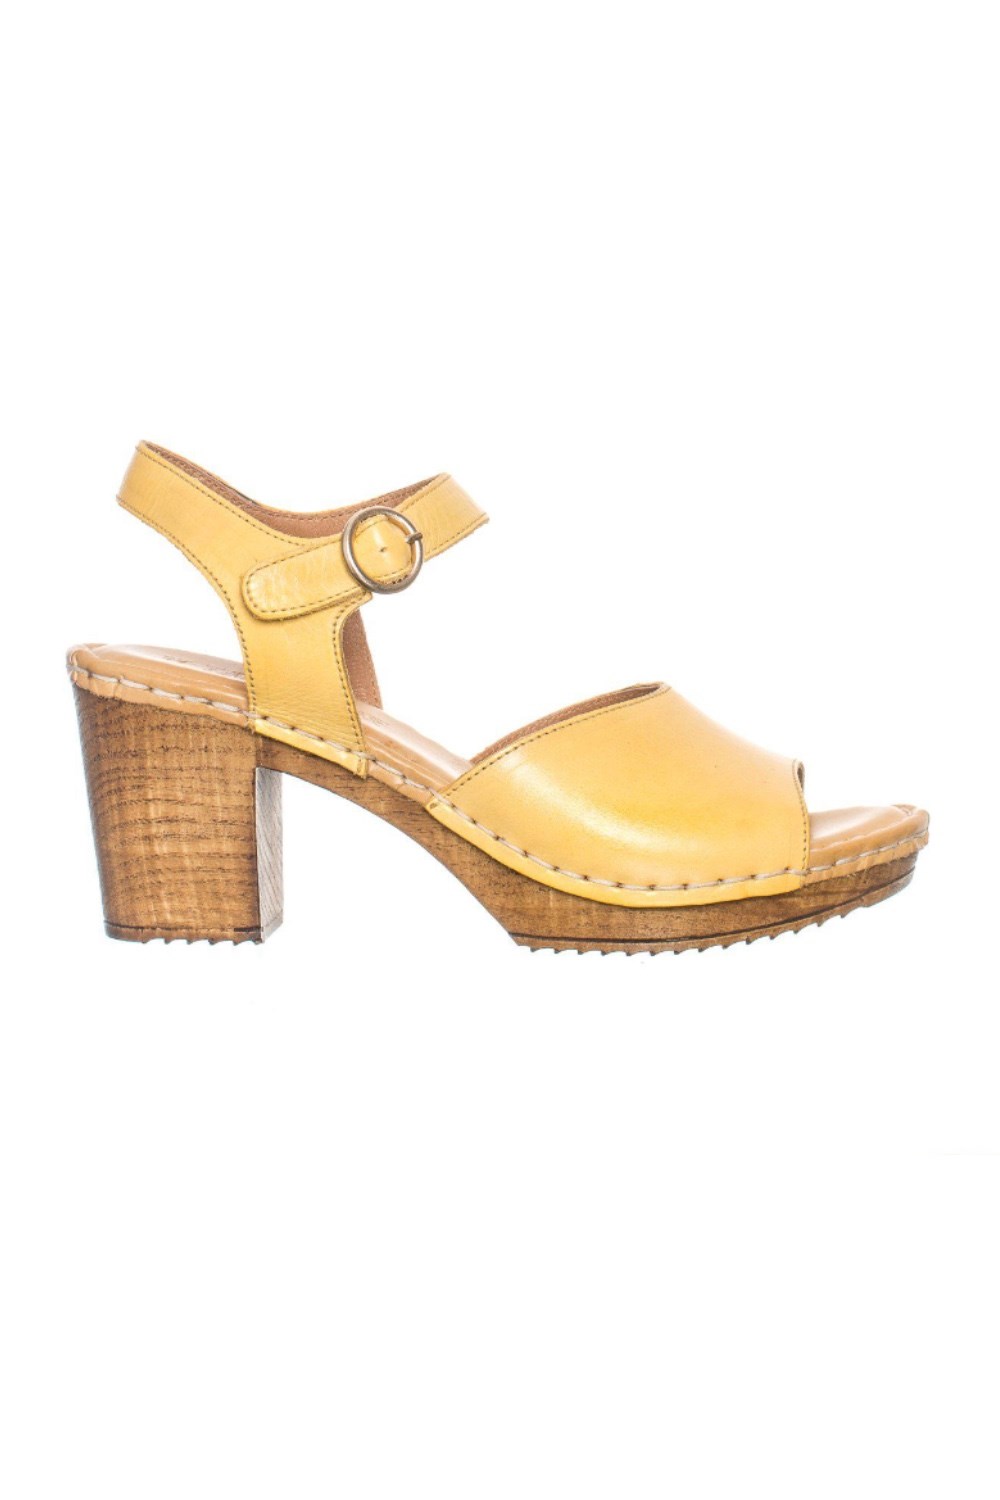 Amelia shoe yellow